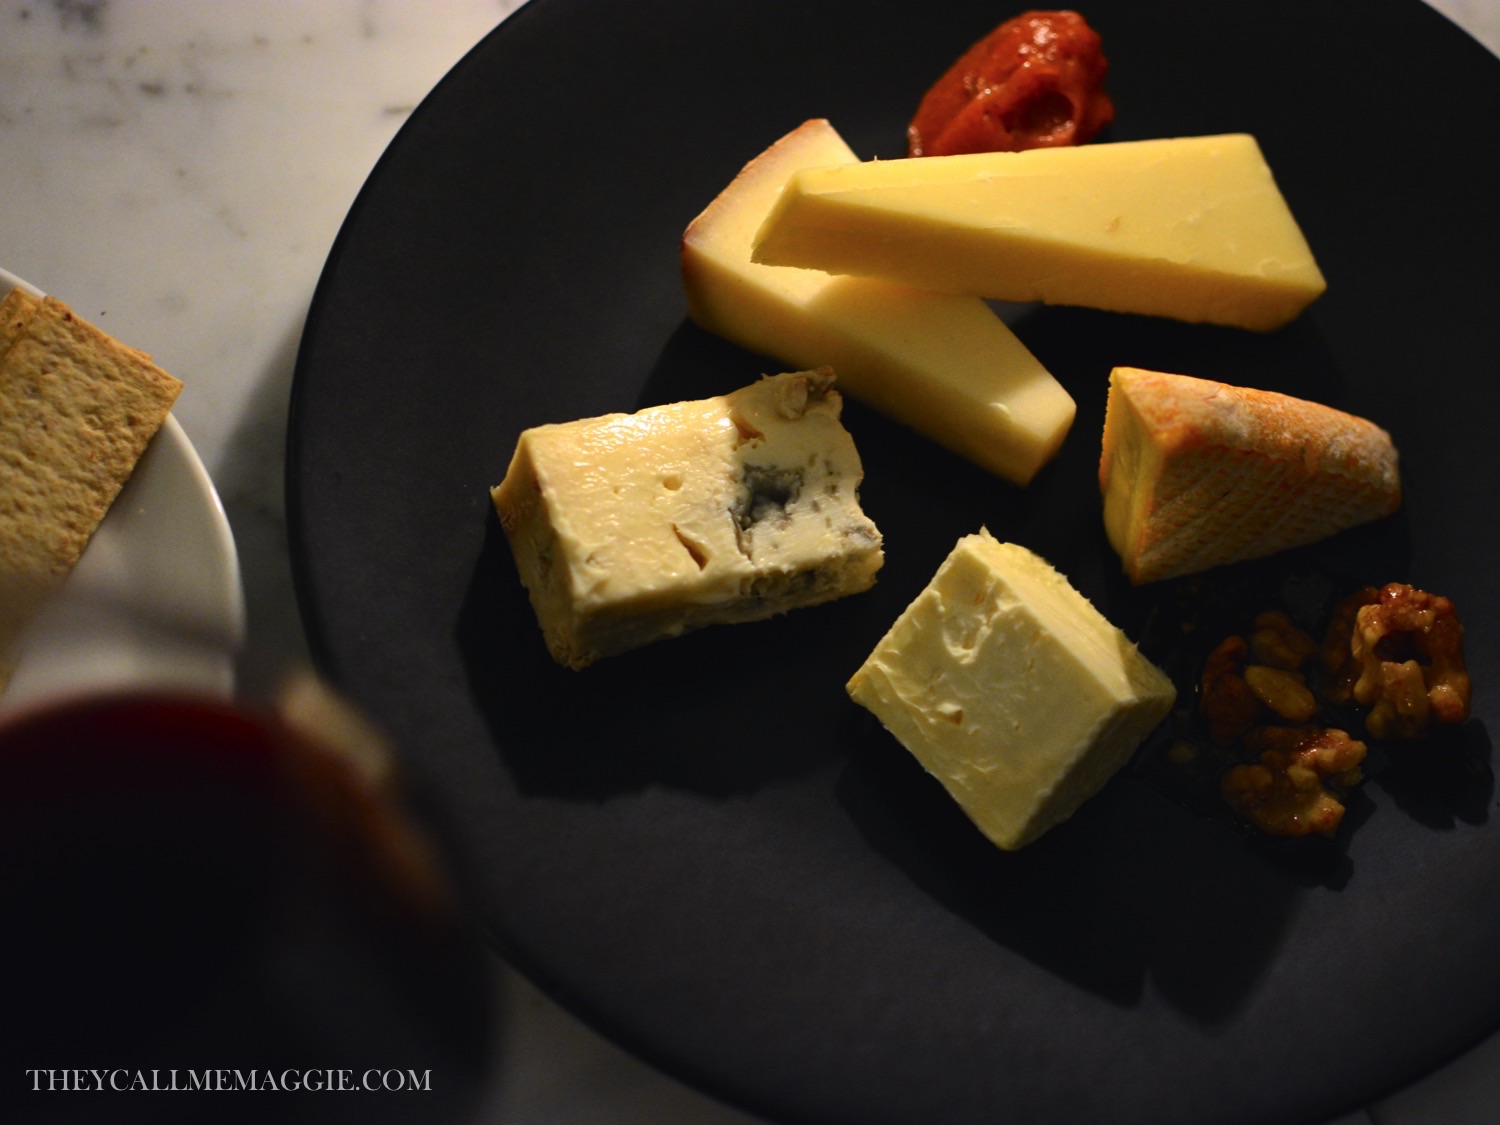 cheese-and-wine.jpg